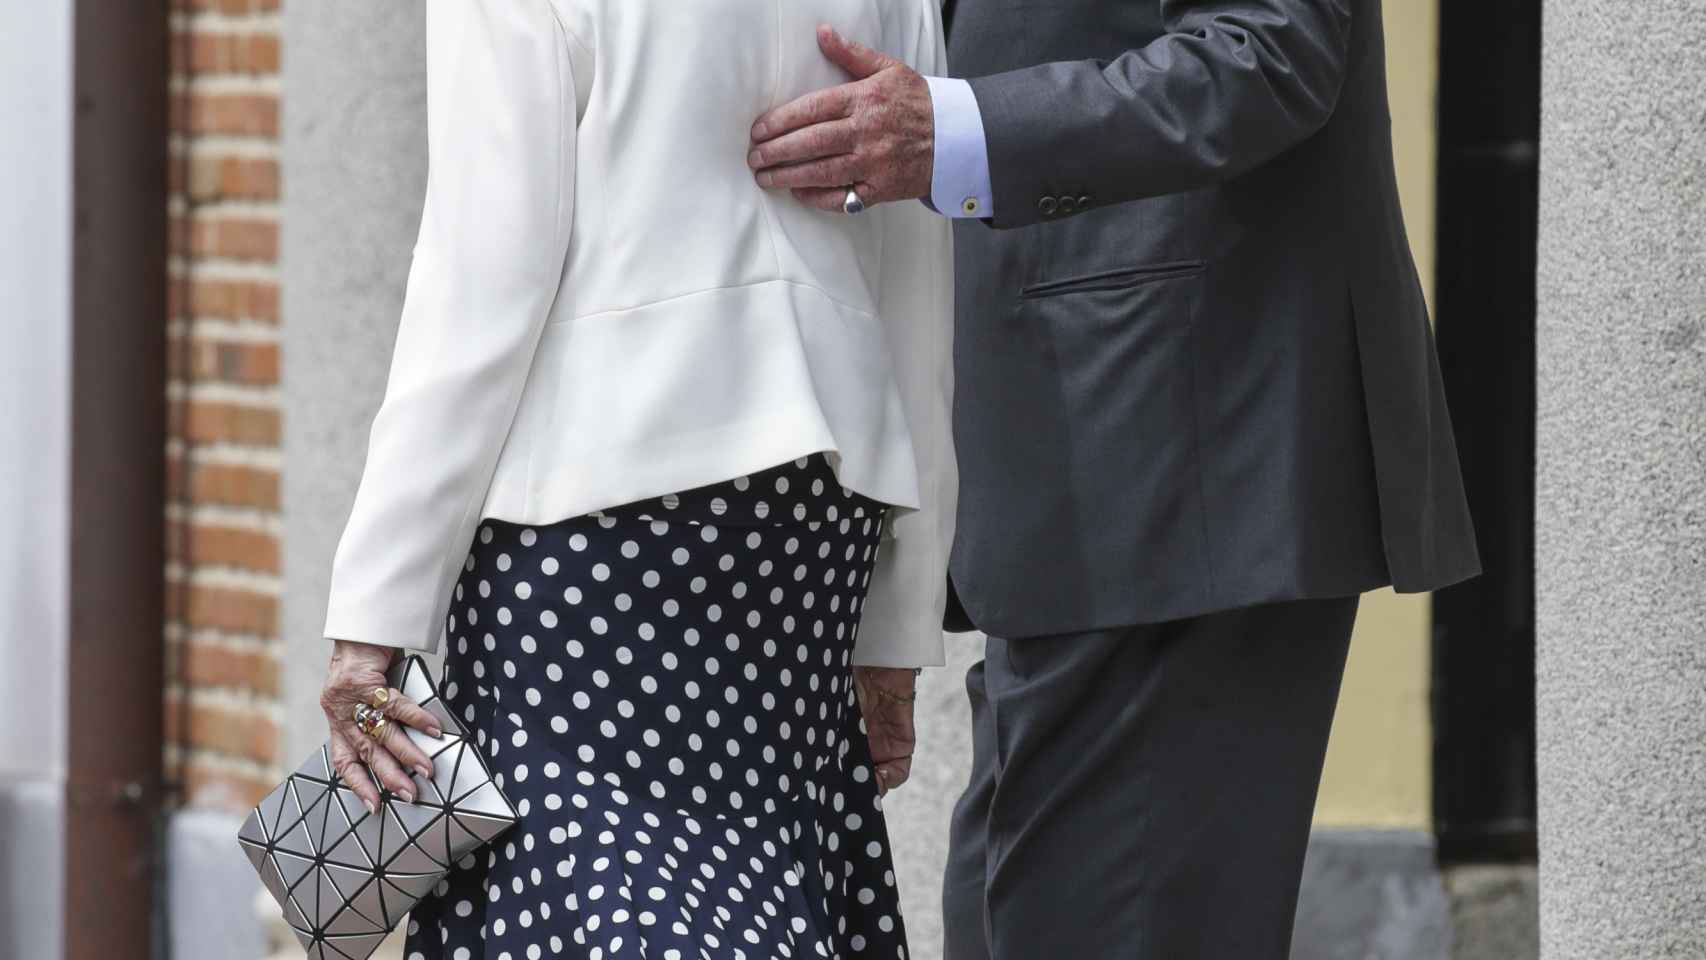 El rey Juan Carlos apoya la mano sobre la espalda de la reina Sofía.